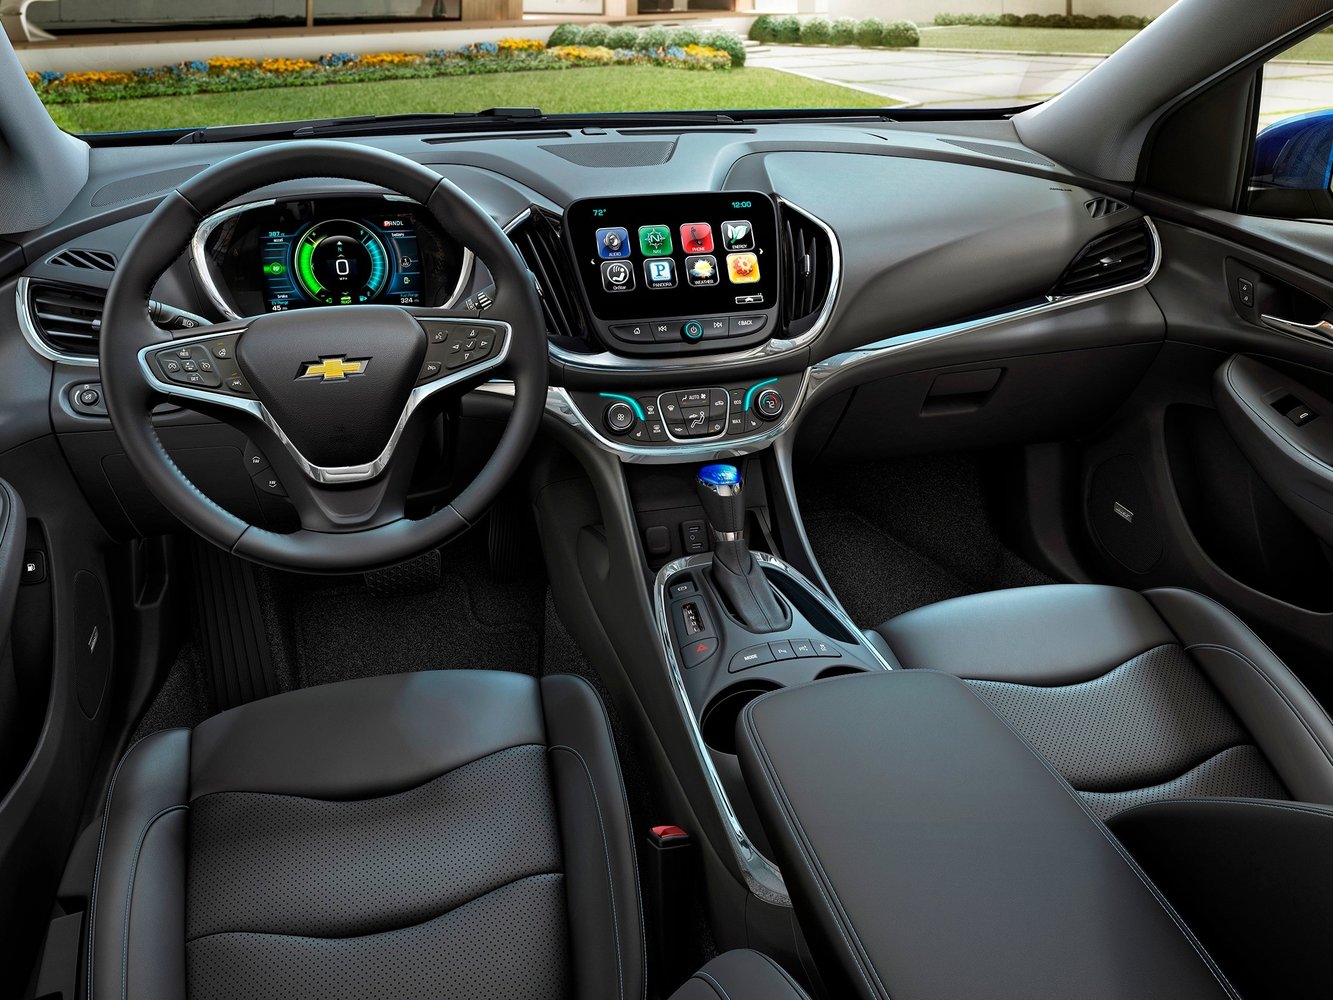 хэтчбек 5 дв. Chevrolet Volt 2015 - 2016г выпуска модификация 1.5 CVT (101 л.с.)